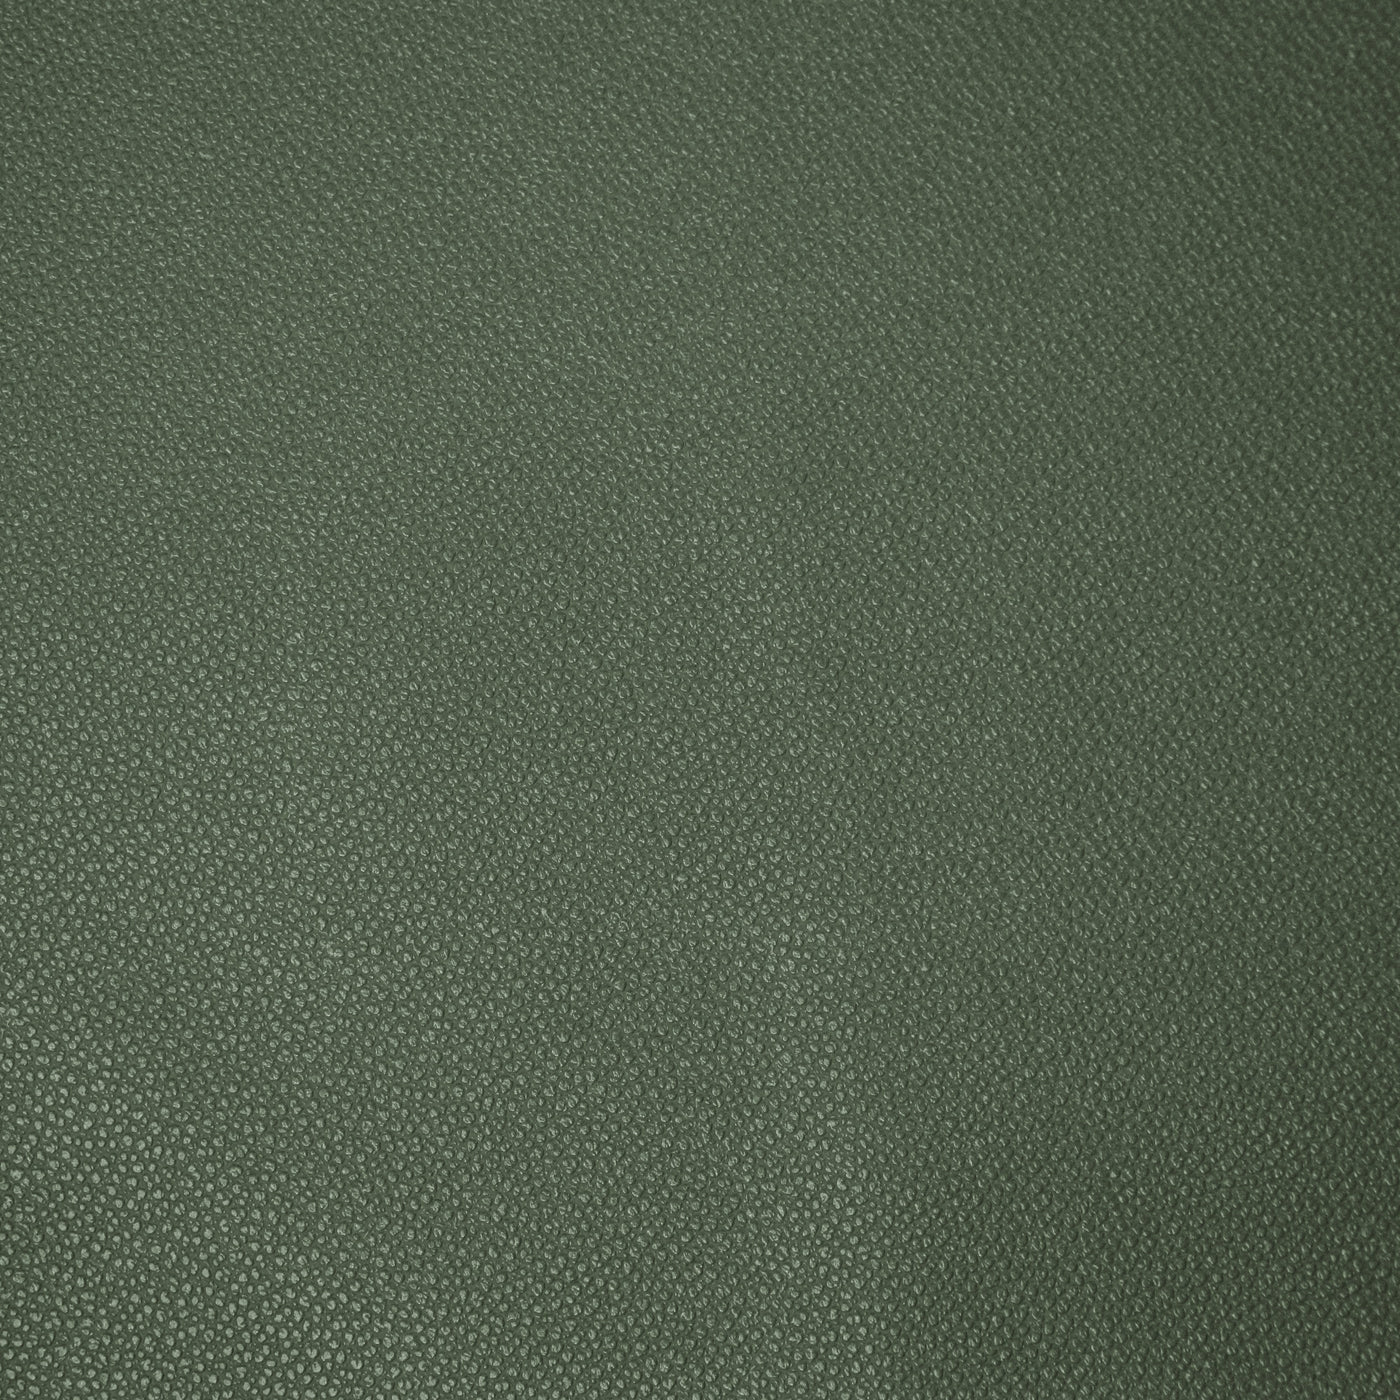 Corte empaquetado de 1/2 yarda: cuero sintético de guijarros verde bosque